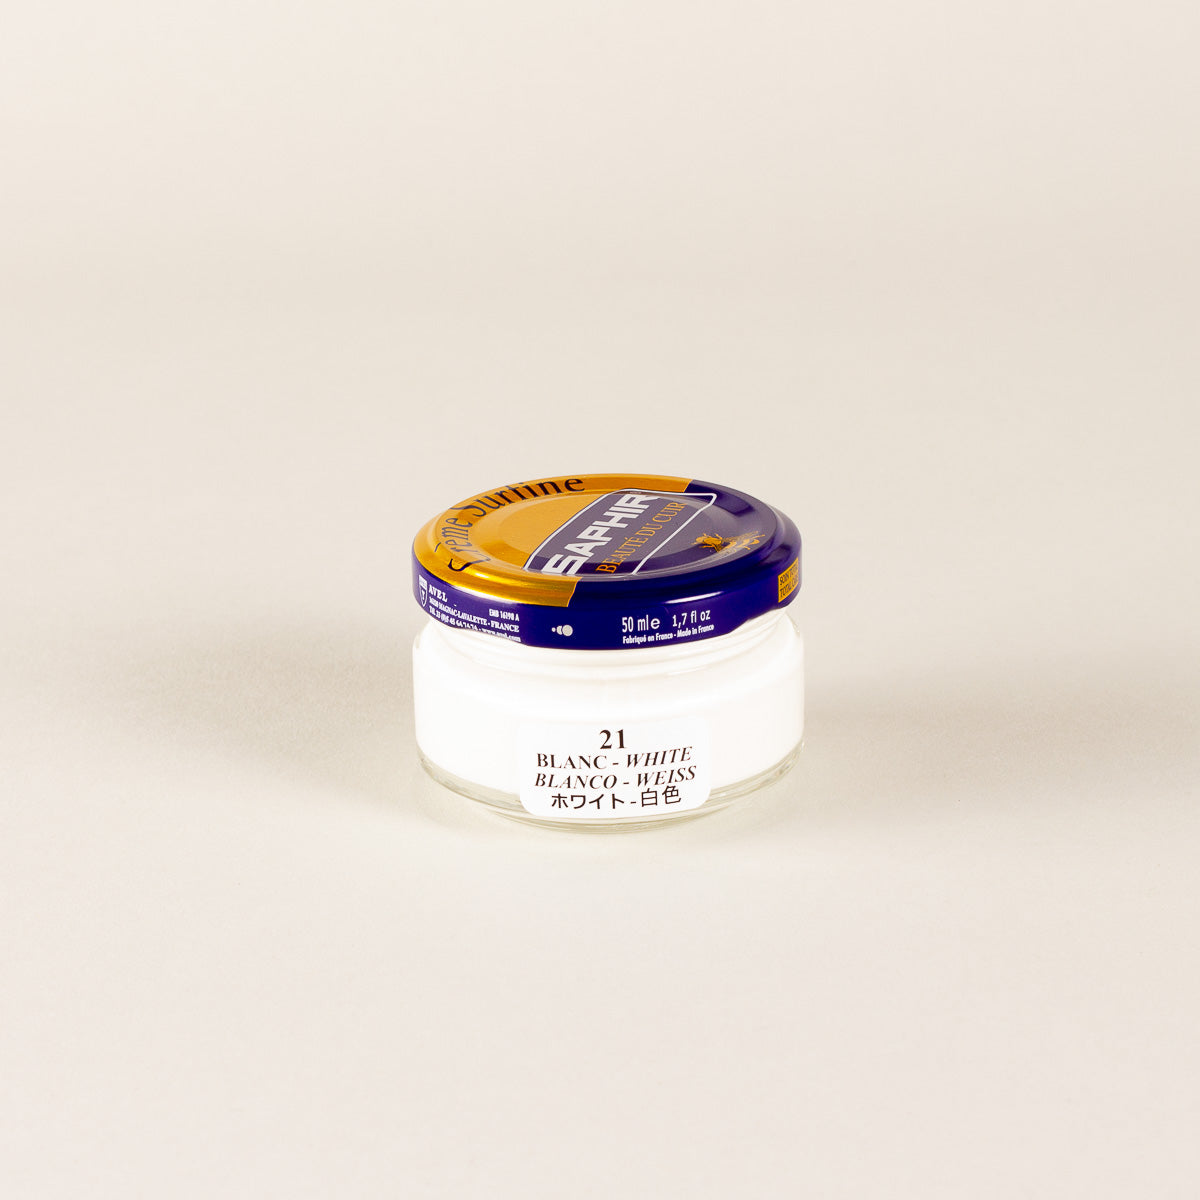 Saphir Cirage Crème Surfine Pommadier, Bleu Marine, 50 ml 